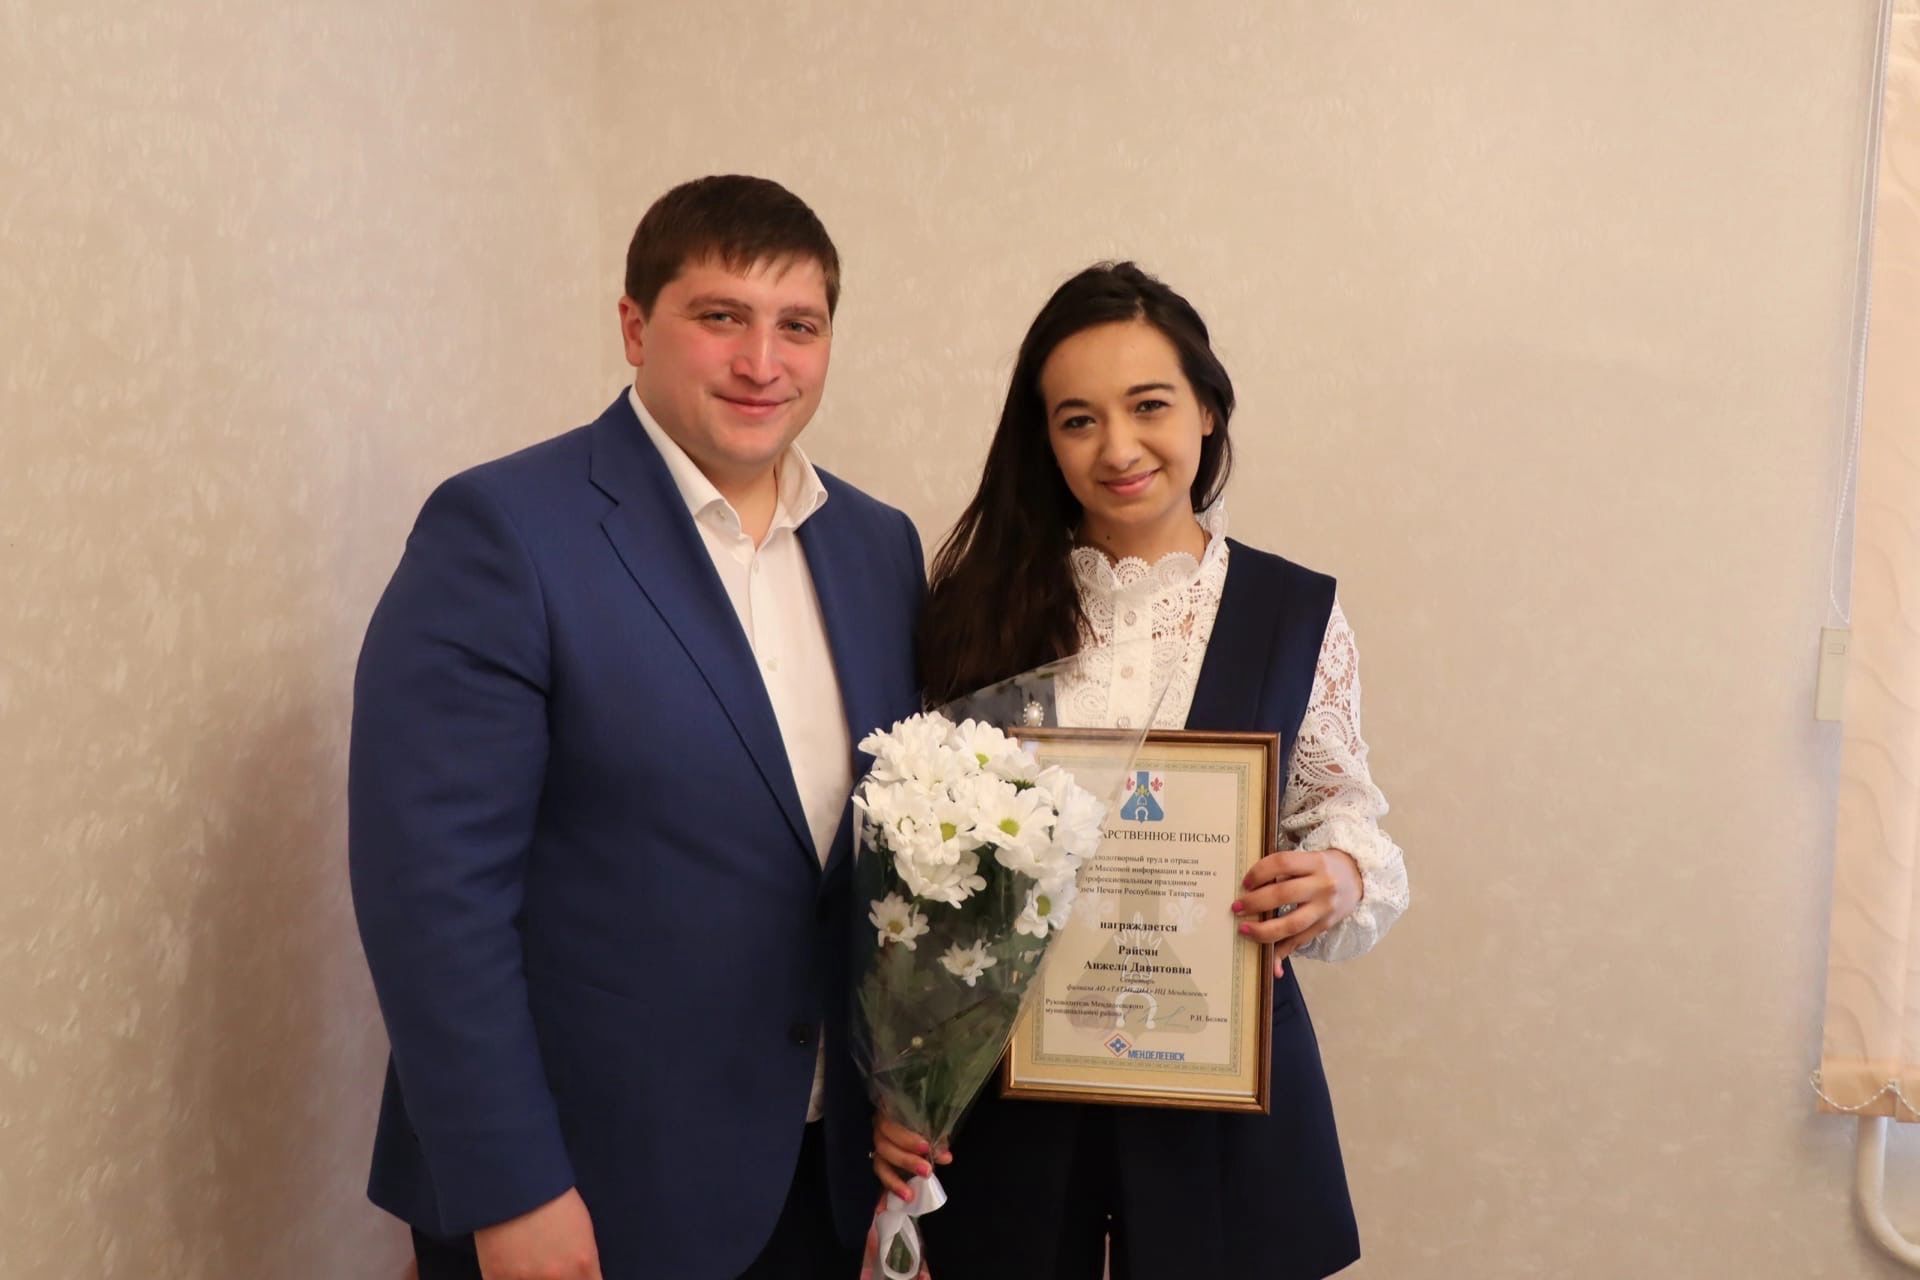 Руководитель района Радмир Беляев вручил благодарственные письма сотрудникам редакции